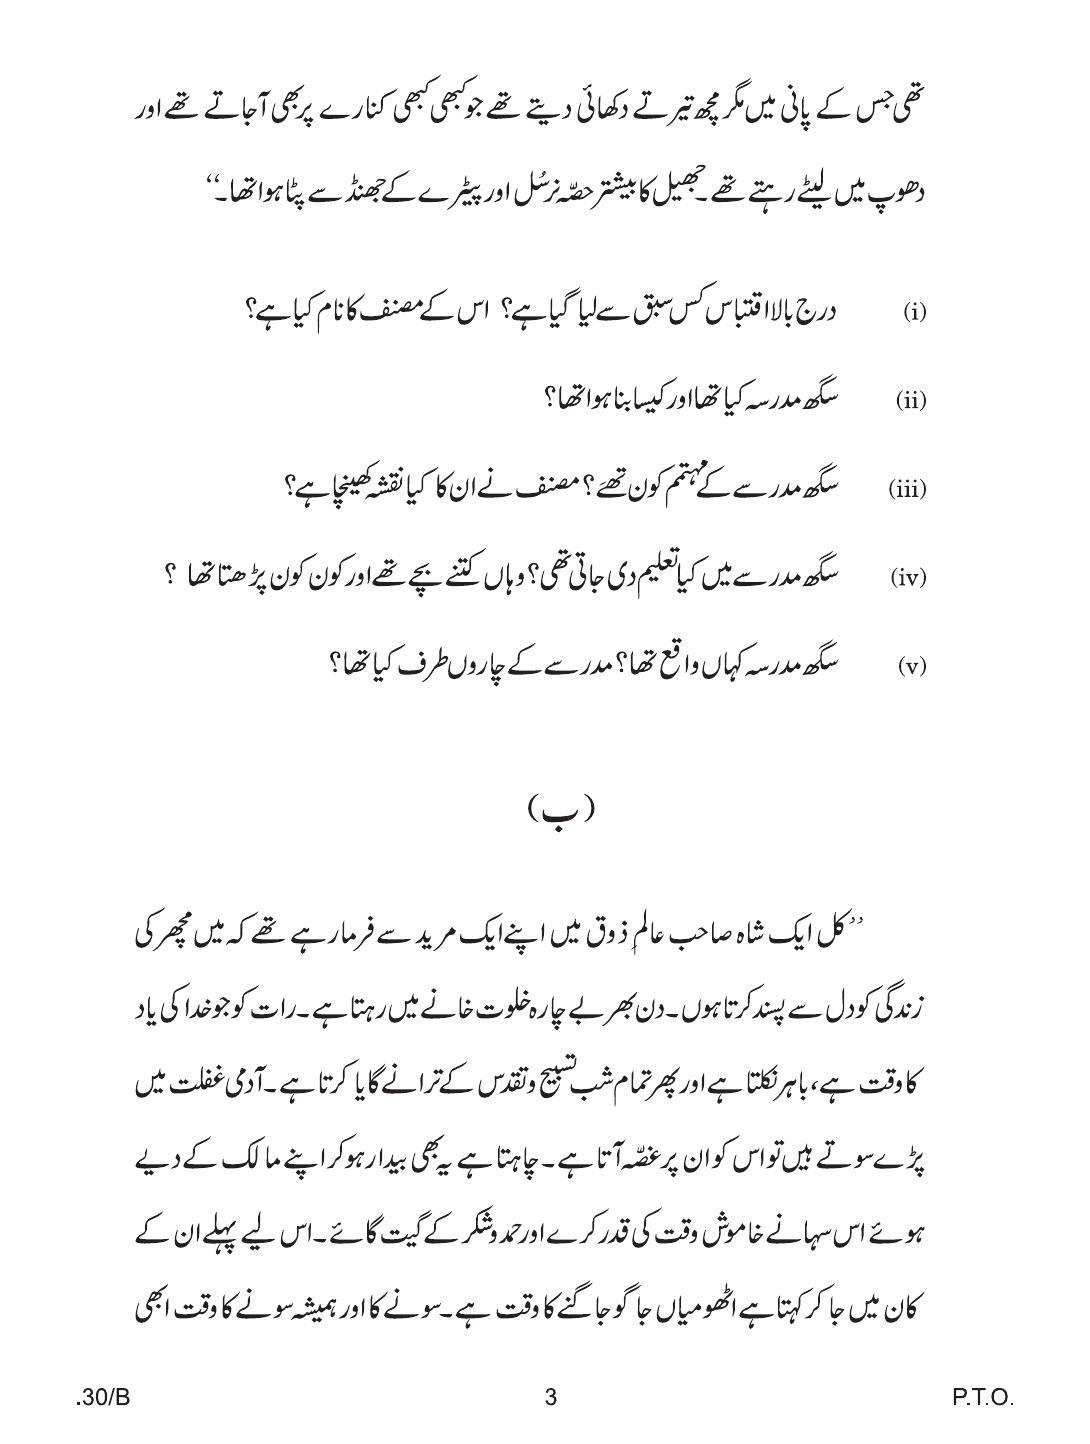 CBSE Class 12 Urdu Elective 2020 Compartment Question Paper - Page 3